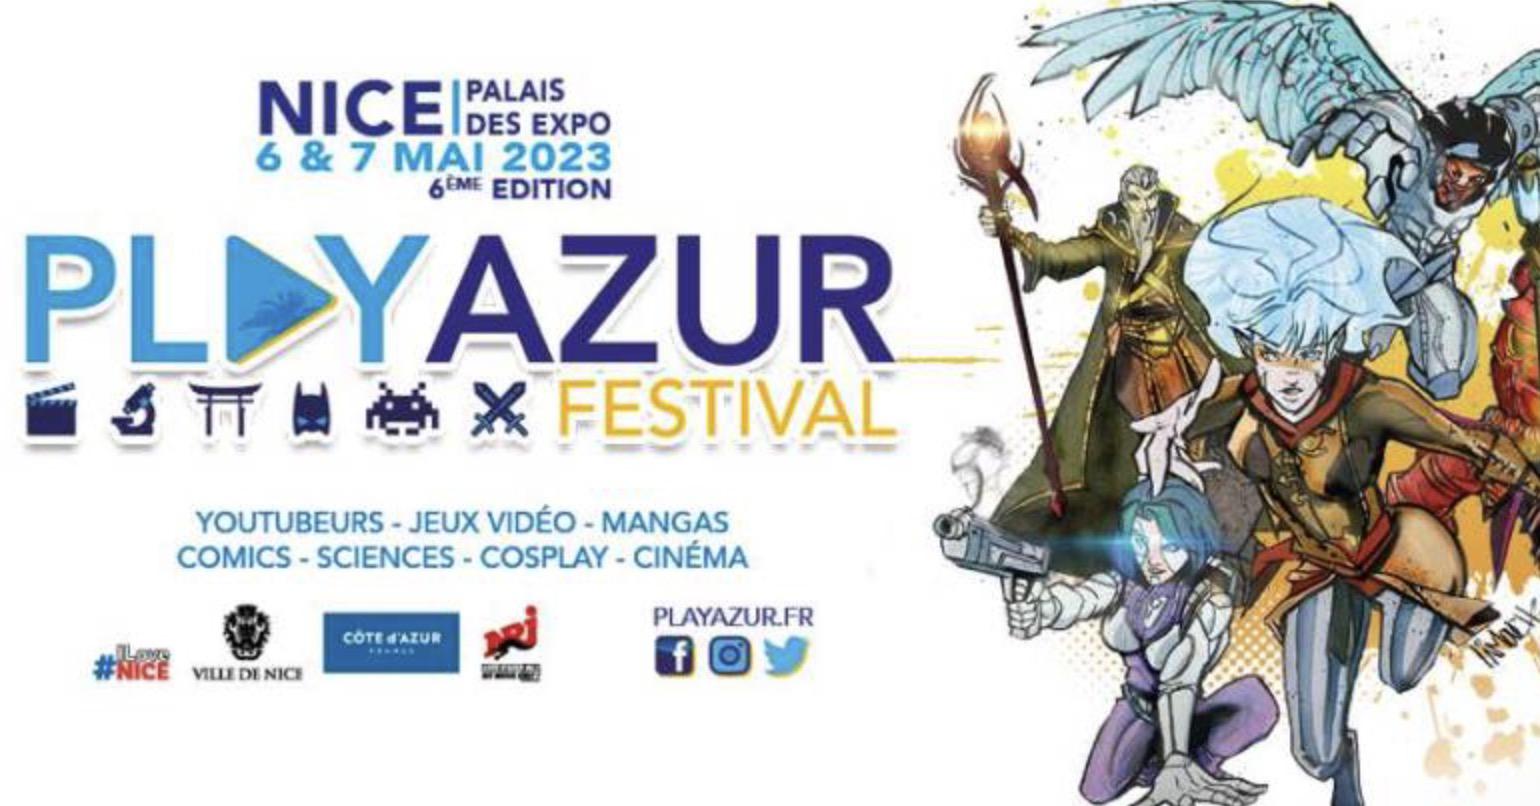 PlayAzur Festival 2023 \: le festival niçois de culture pop